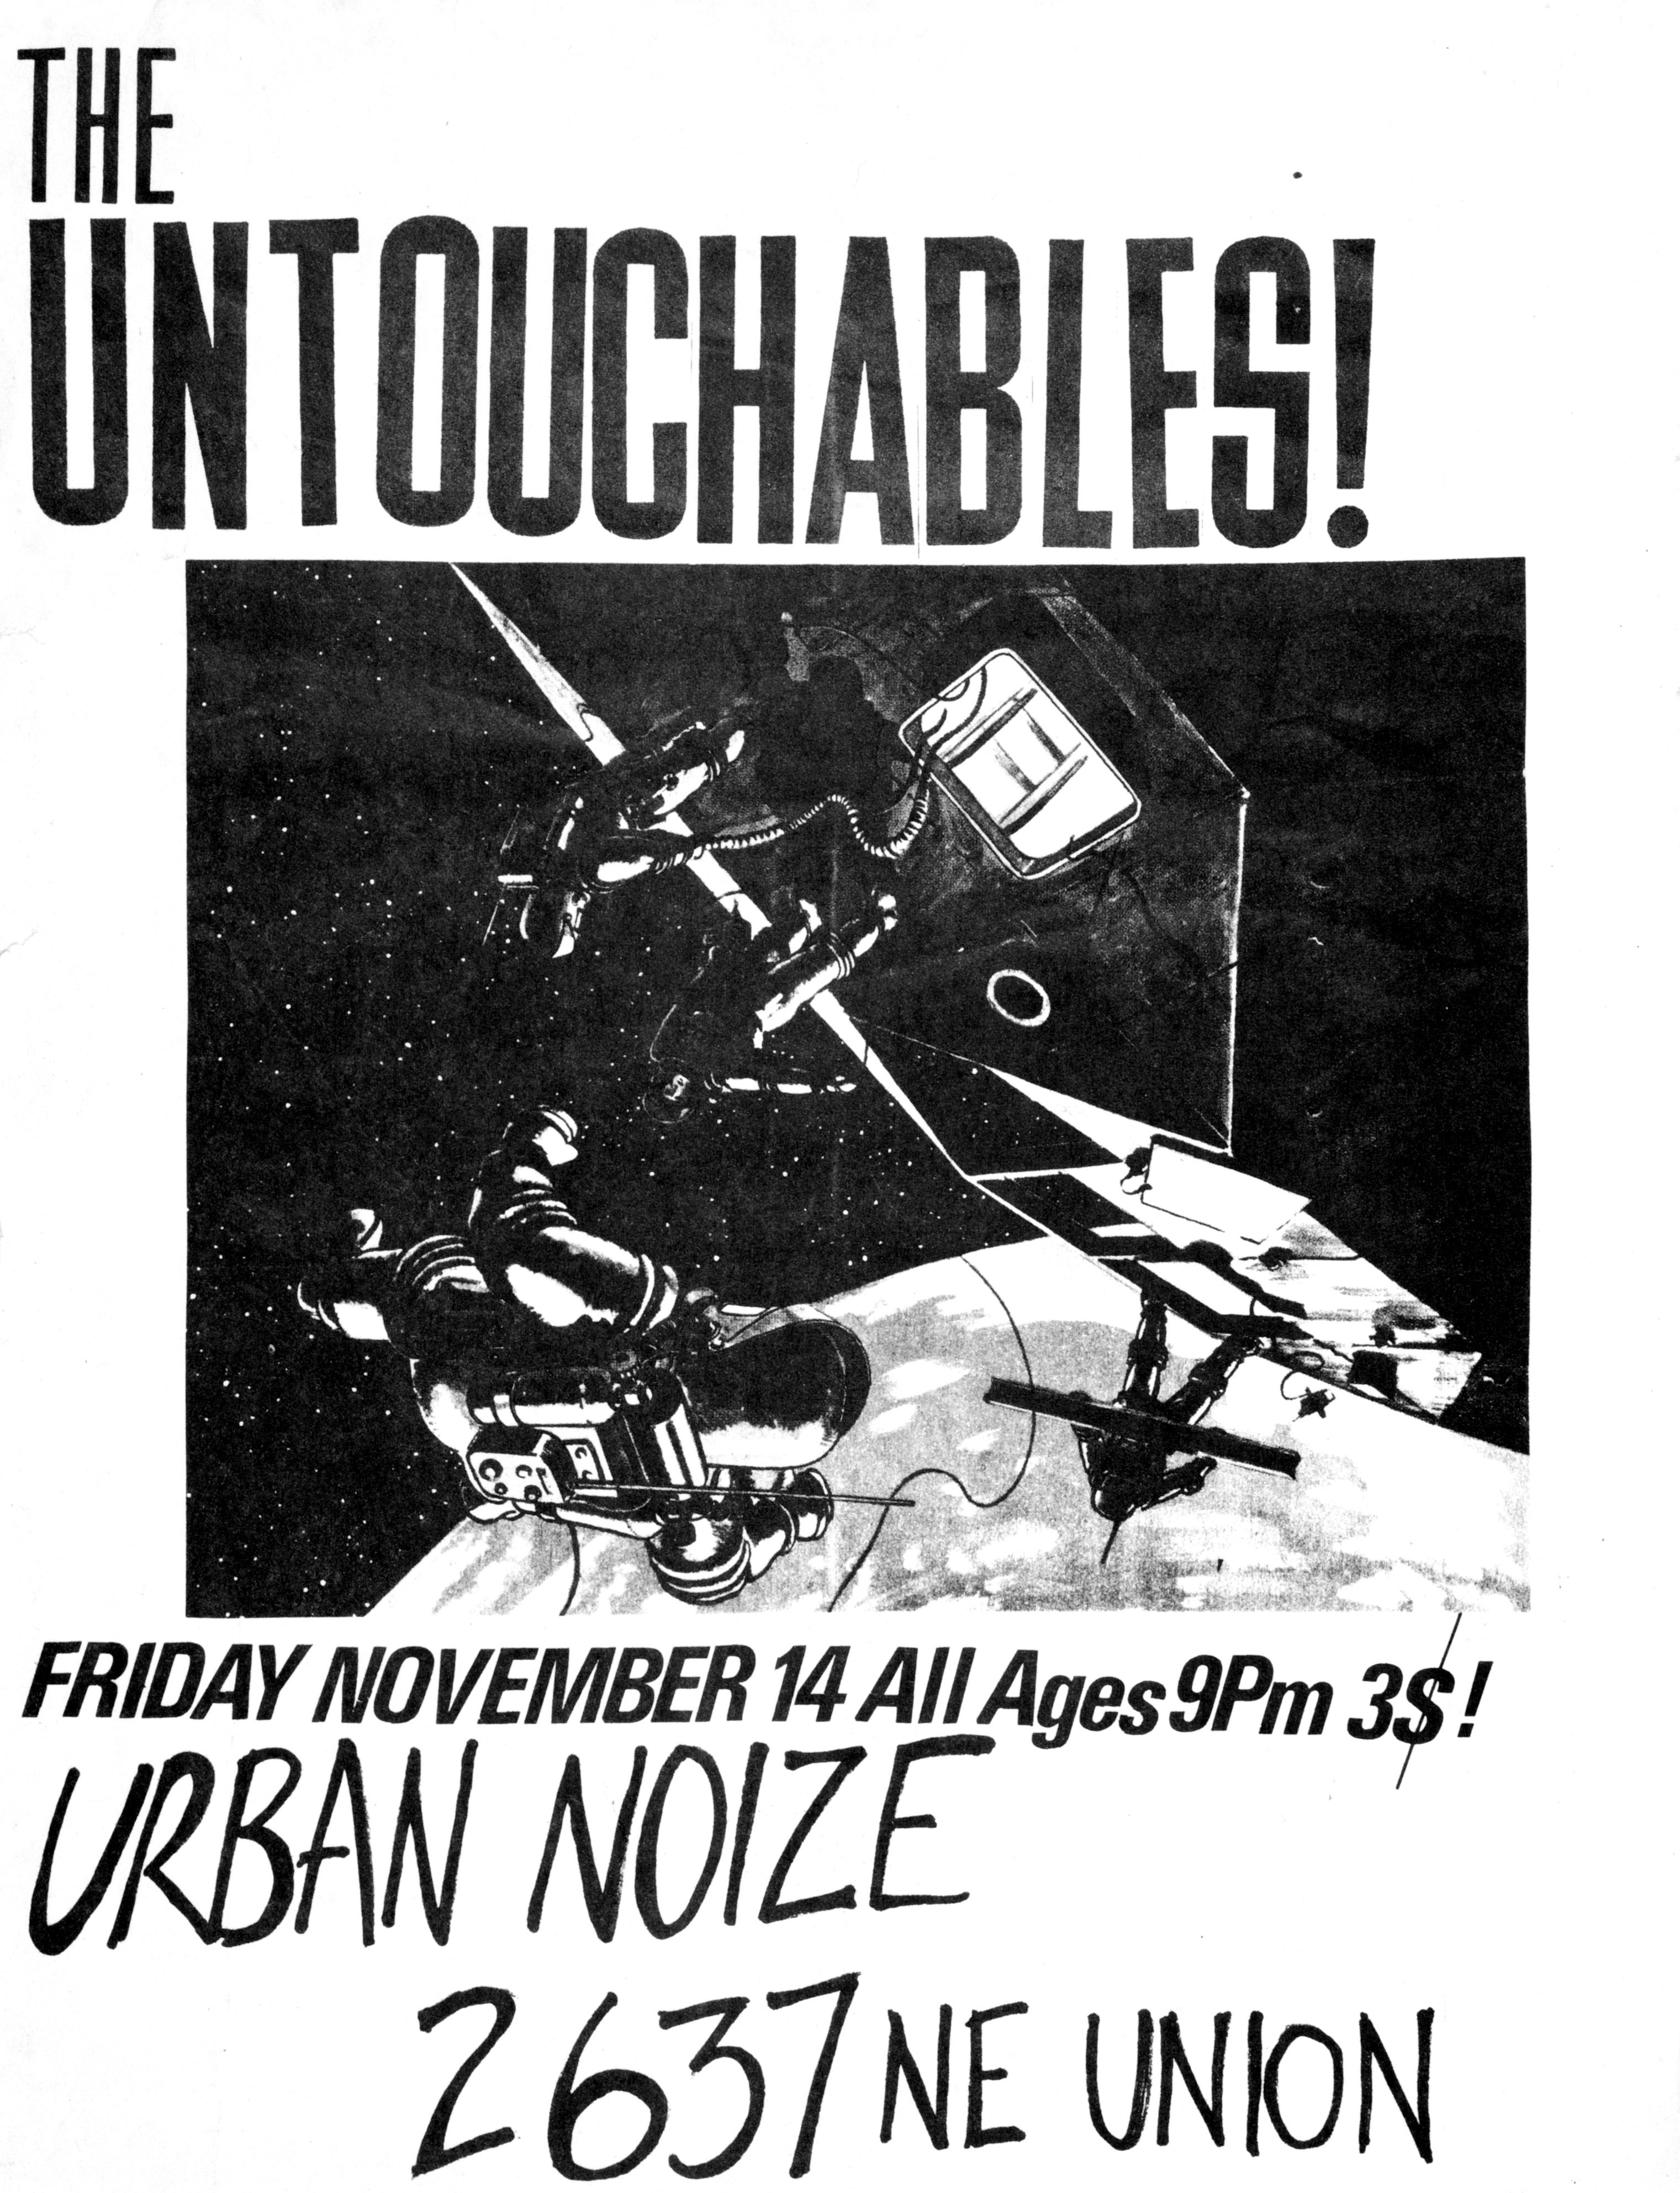 MXP-46.4 Untouchables 1980 Urban Noize  Nov 14 Concert Poster